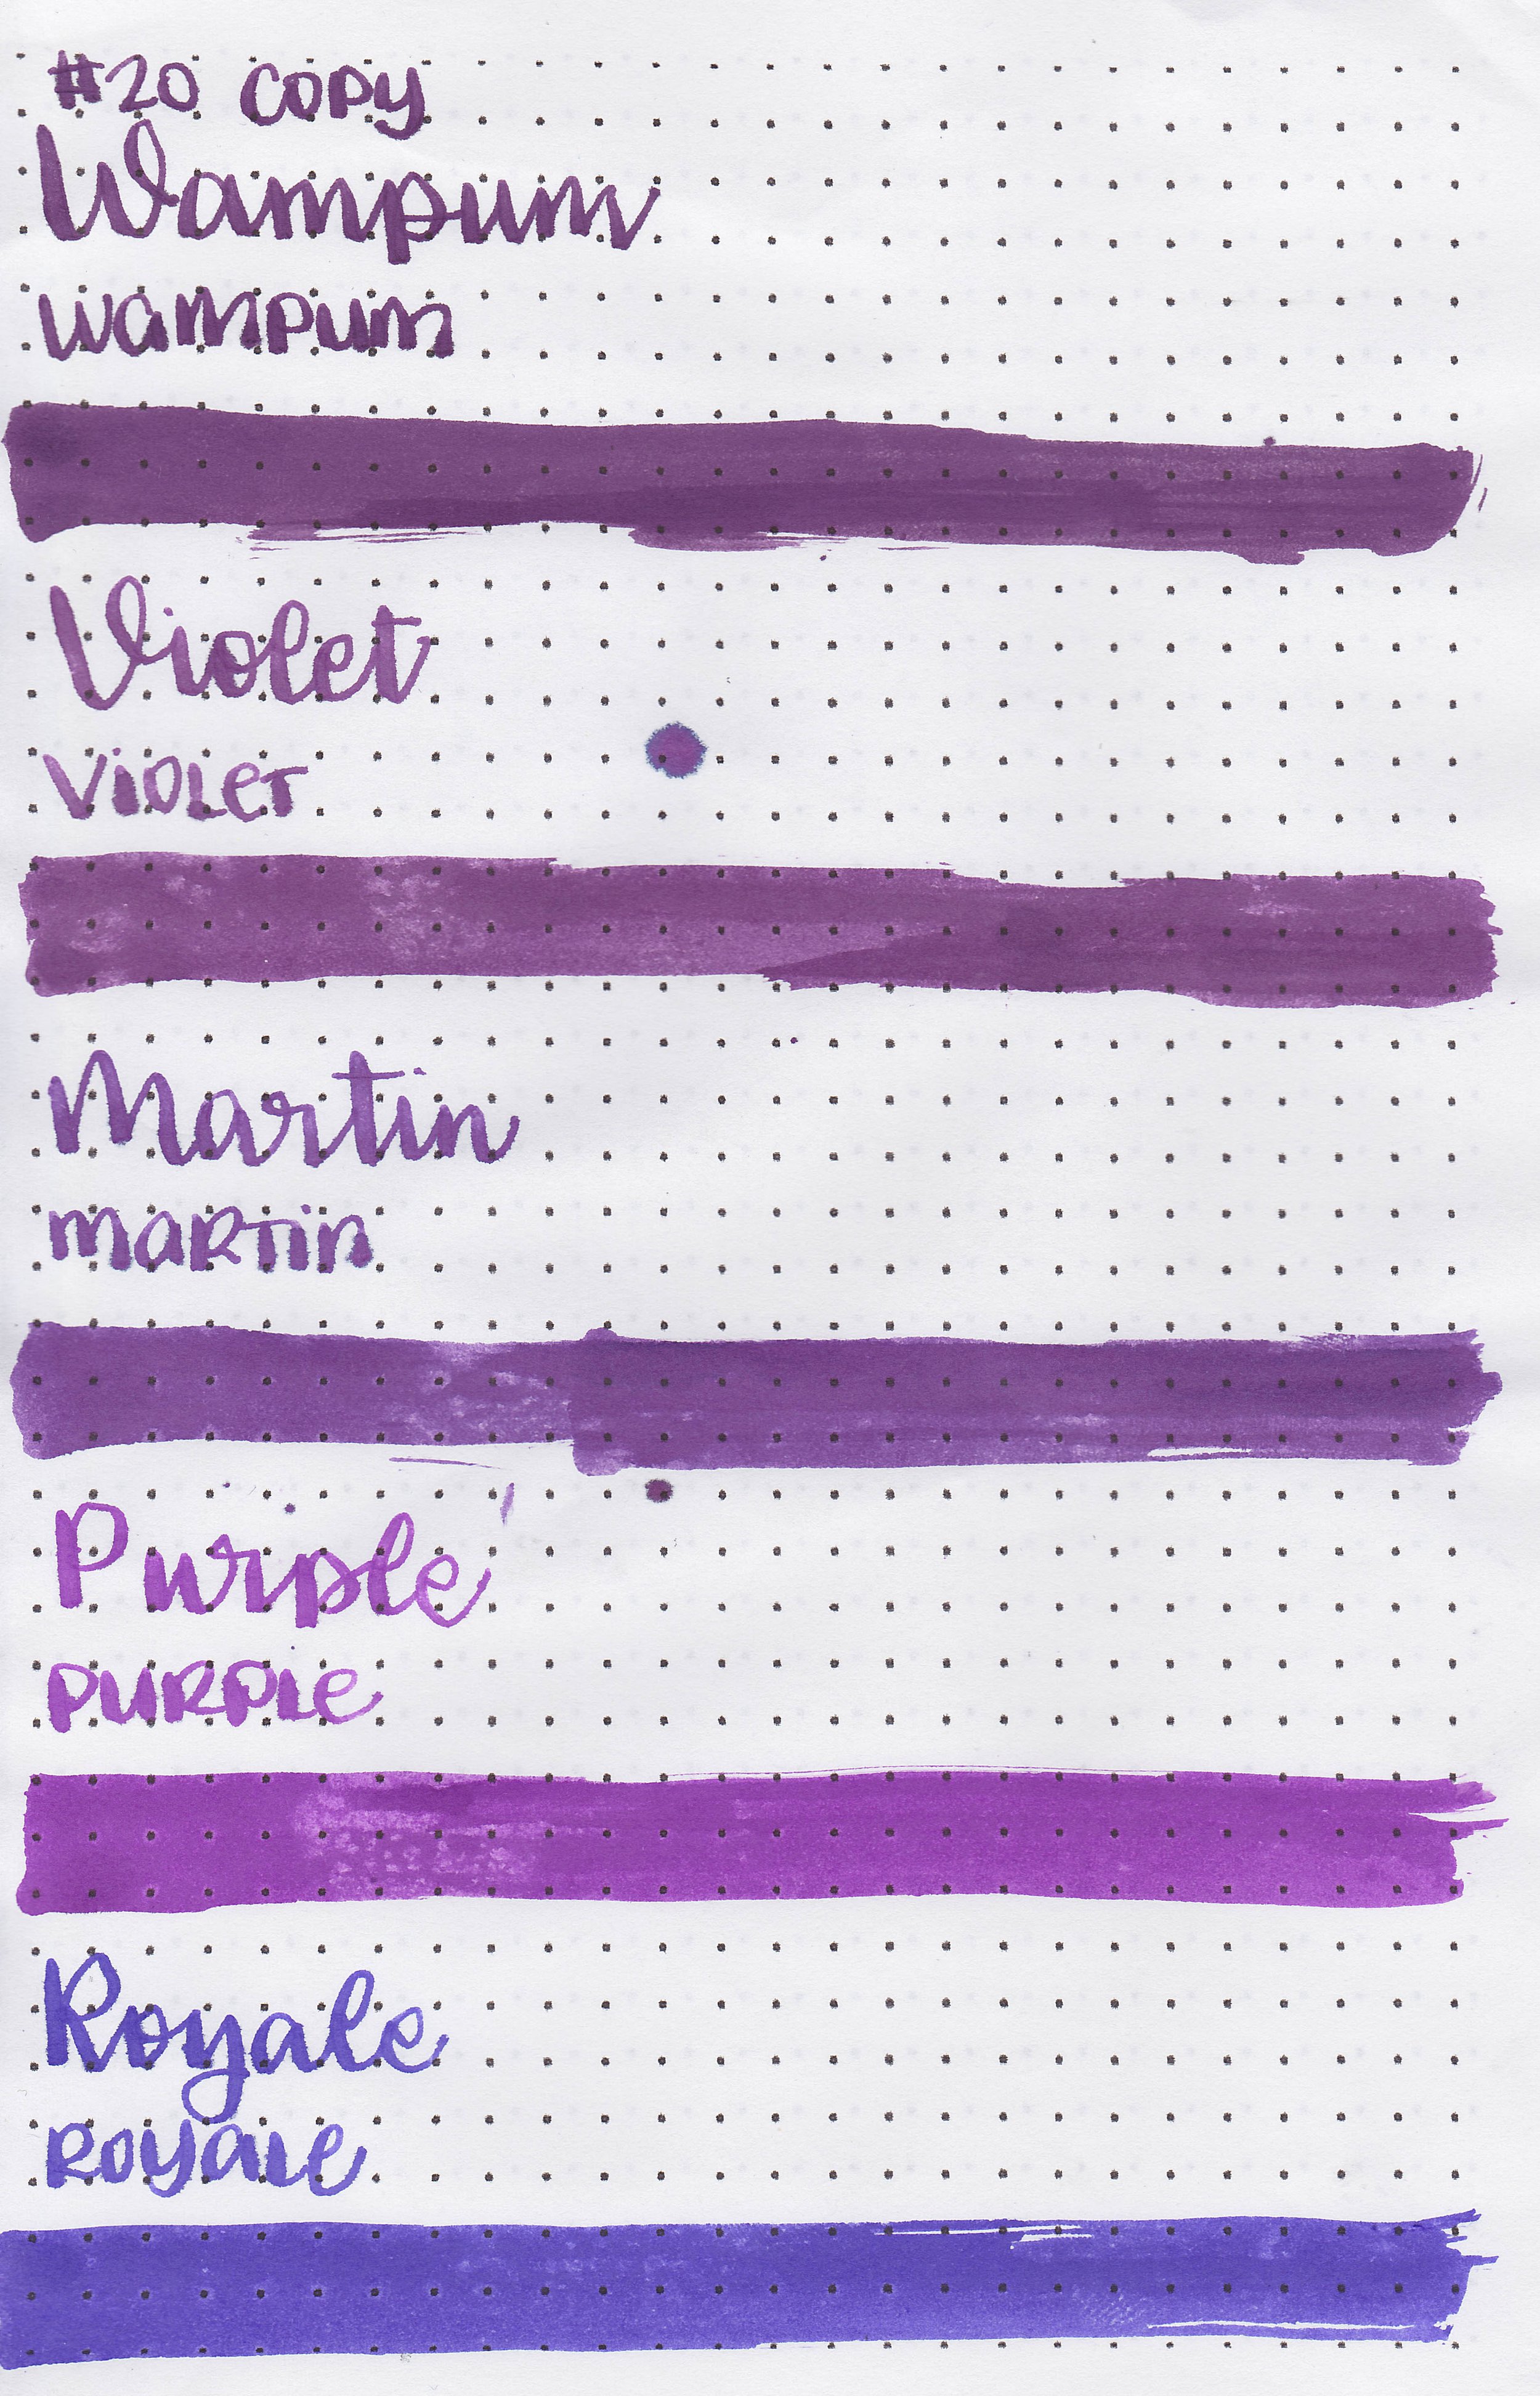 nood-purples-15.jpg